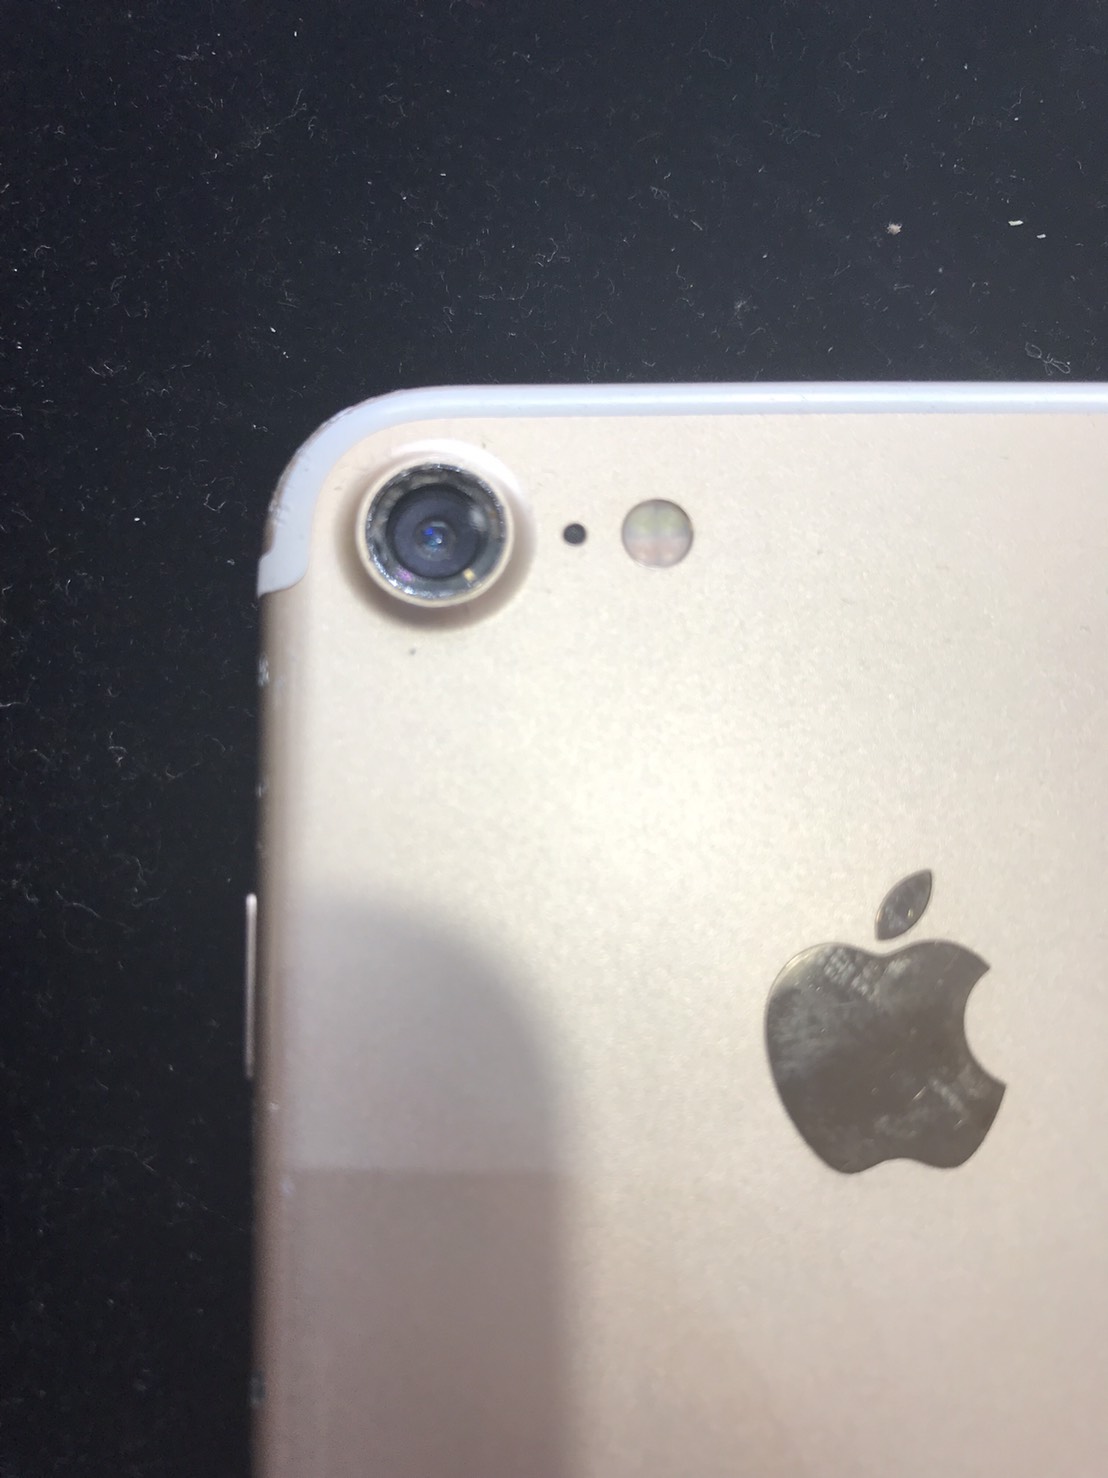 Iphone7のカメラが割れた 修理時間と費用を徹底検証 Iphone修理をお探しの方ならスマップル宮崎店